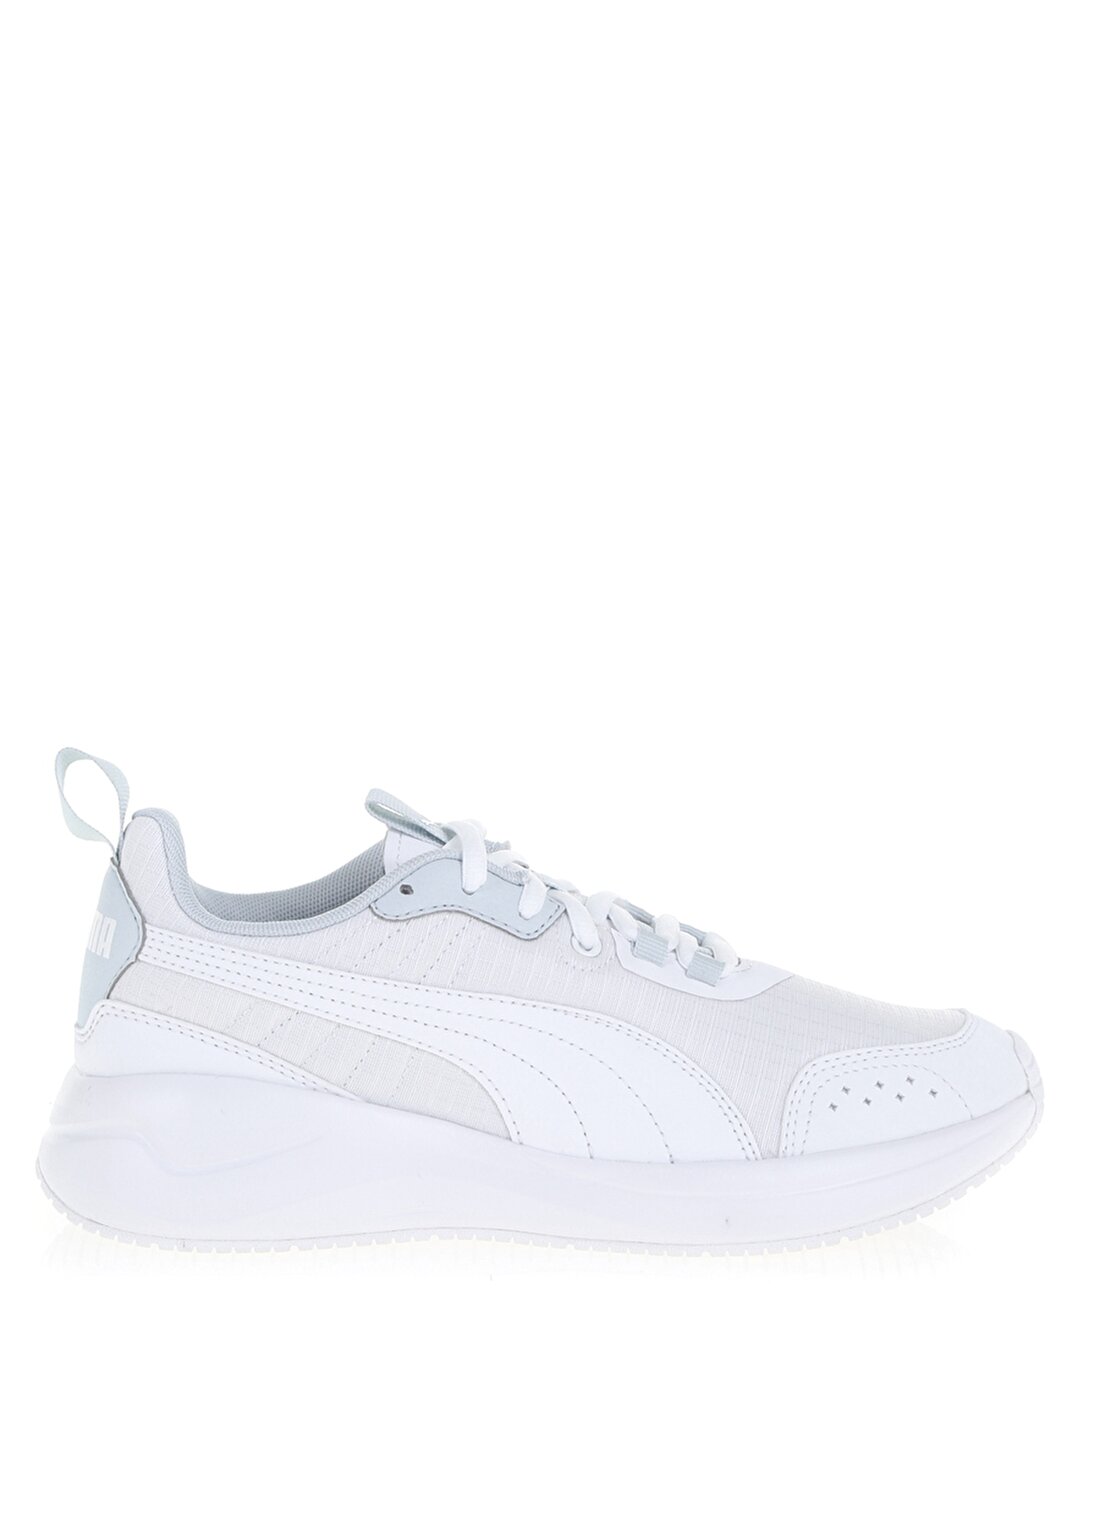 Puma Beyaz Kadın Lifestyle Ayakkabı Nuage Run 37195002